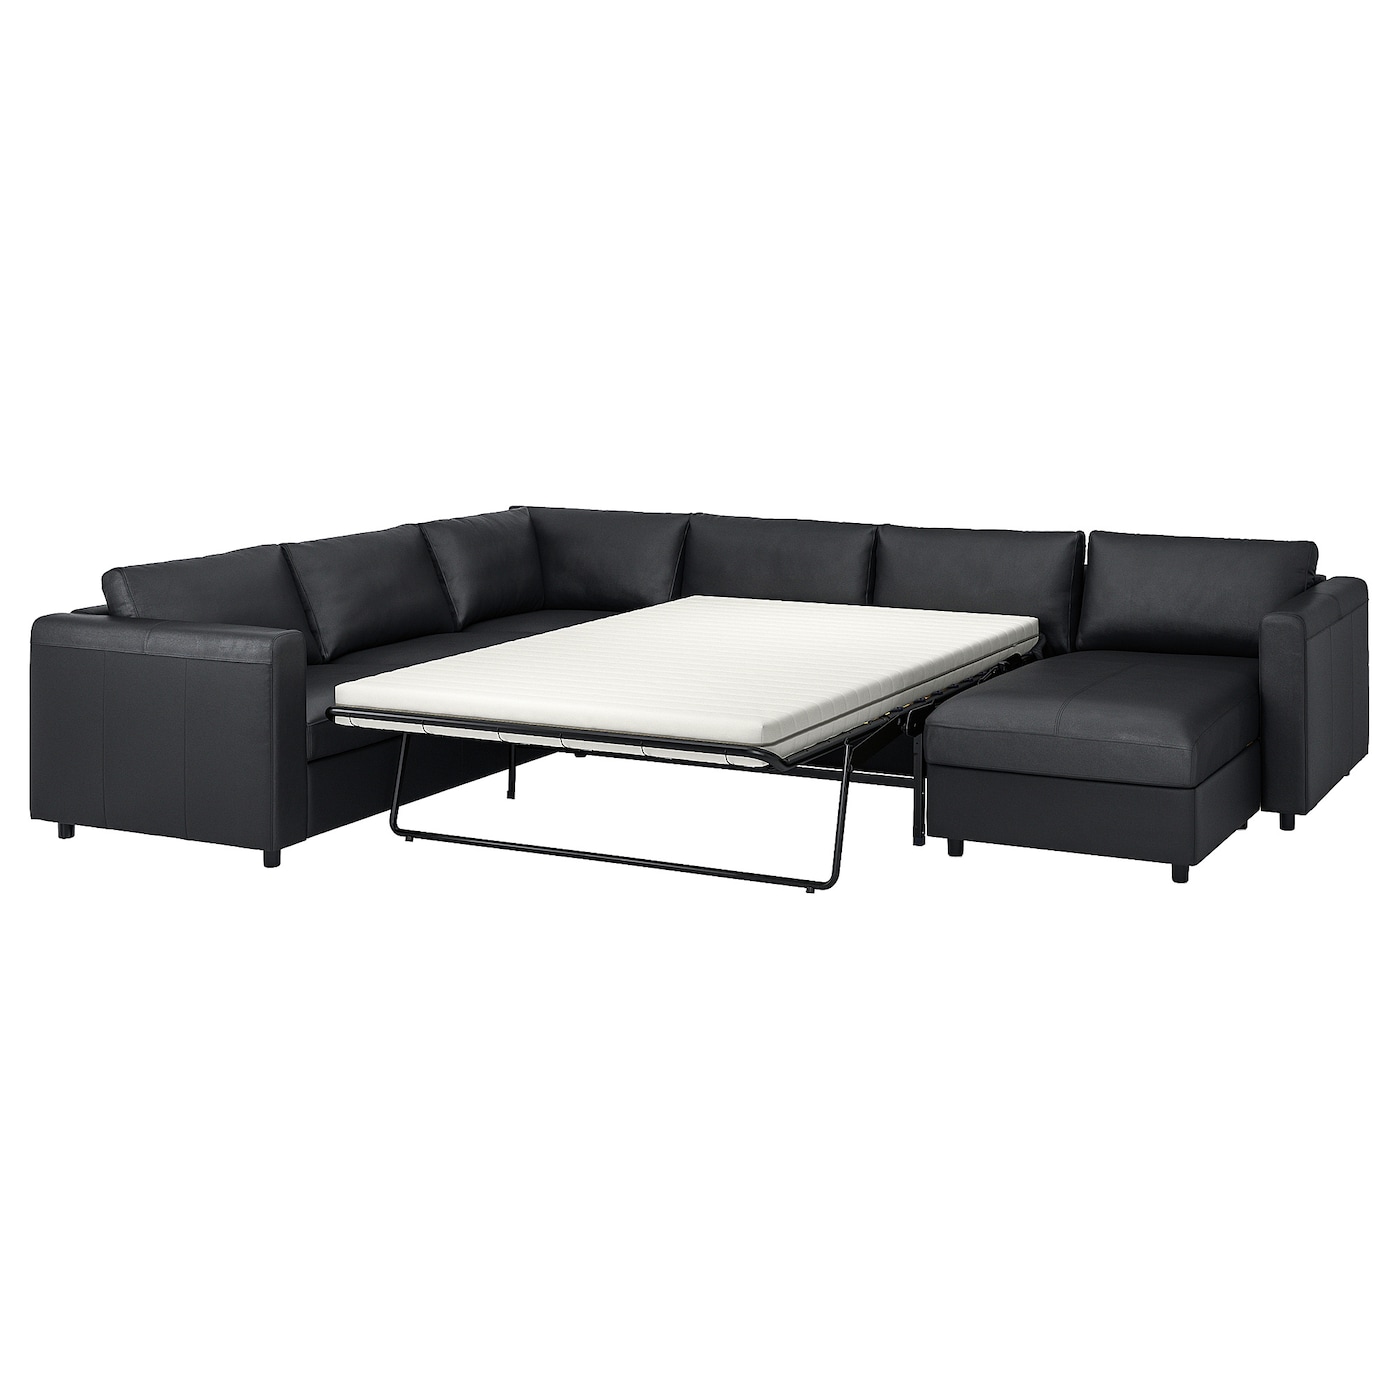 5-местный угловой диван со спальным местом - IKEA VIMLE/GRANN/BOMSTAD, черный, кожа, 349/249х164/98х83 см, 140х200 см, ВИМЛЕ/ГРАНН/БУМСТАД ИКЕА